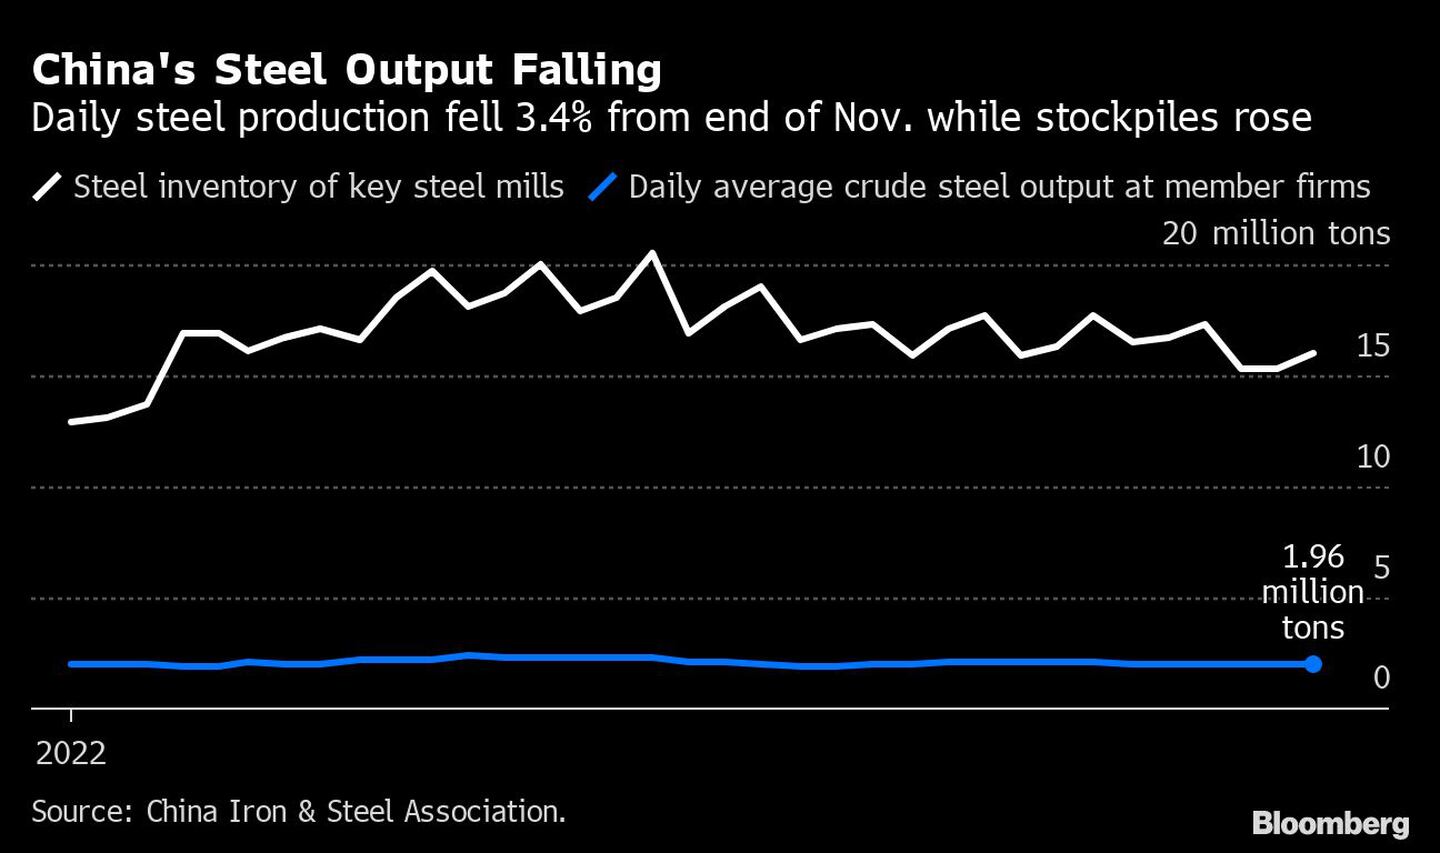 Cae la producción de acero chinadfd